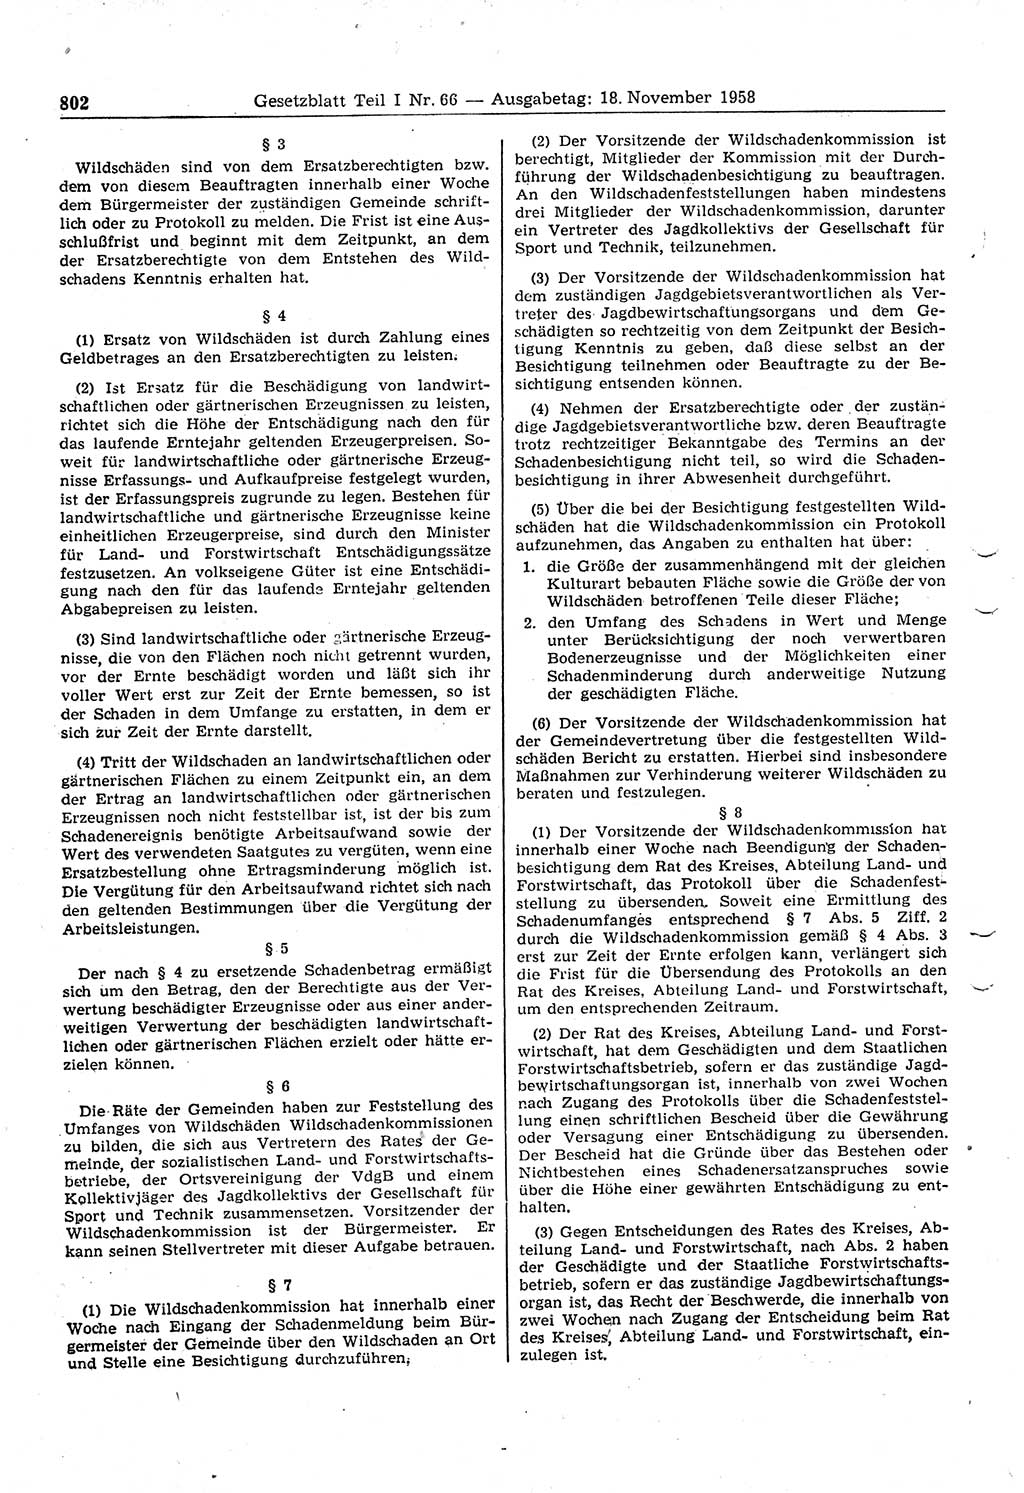 Gesetzblatt (GBl.) der Deutschen Demokratischen Republik (DDR) Teil Ⅰ 1958, Seite 802 (GBl. DDR Ⅰ 1958, S. 802)